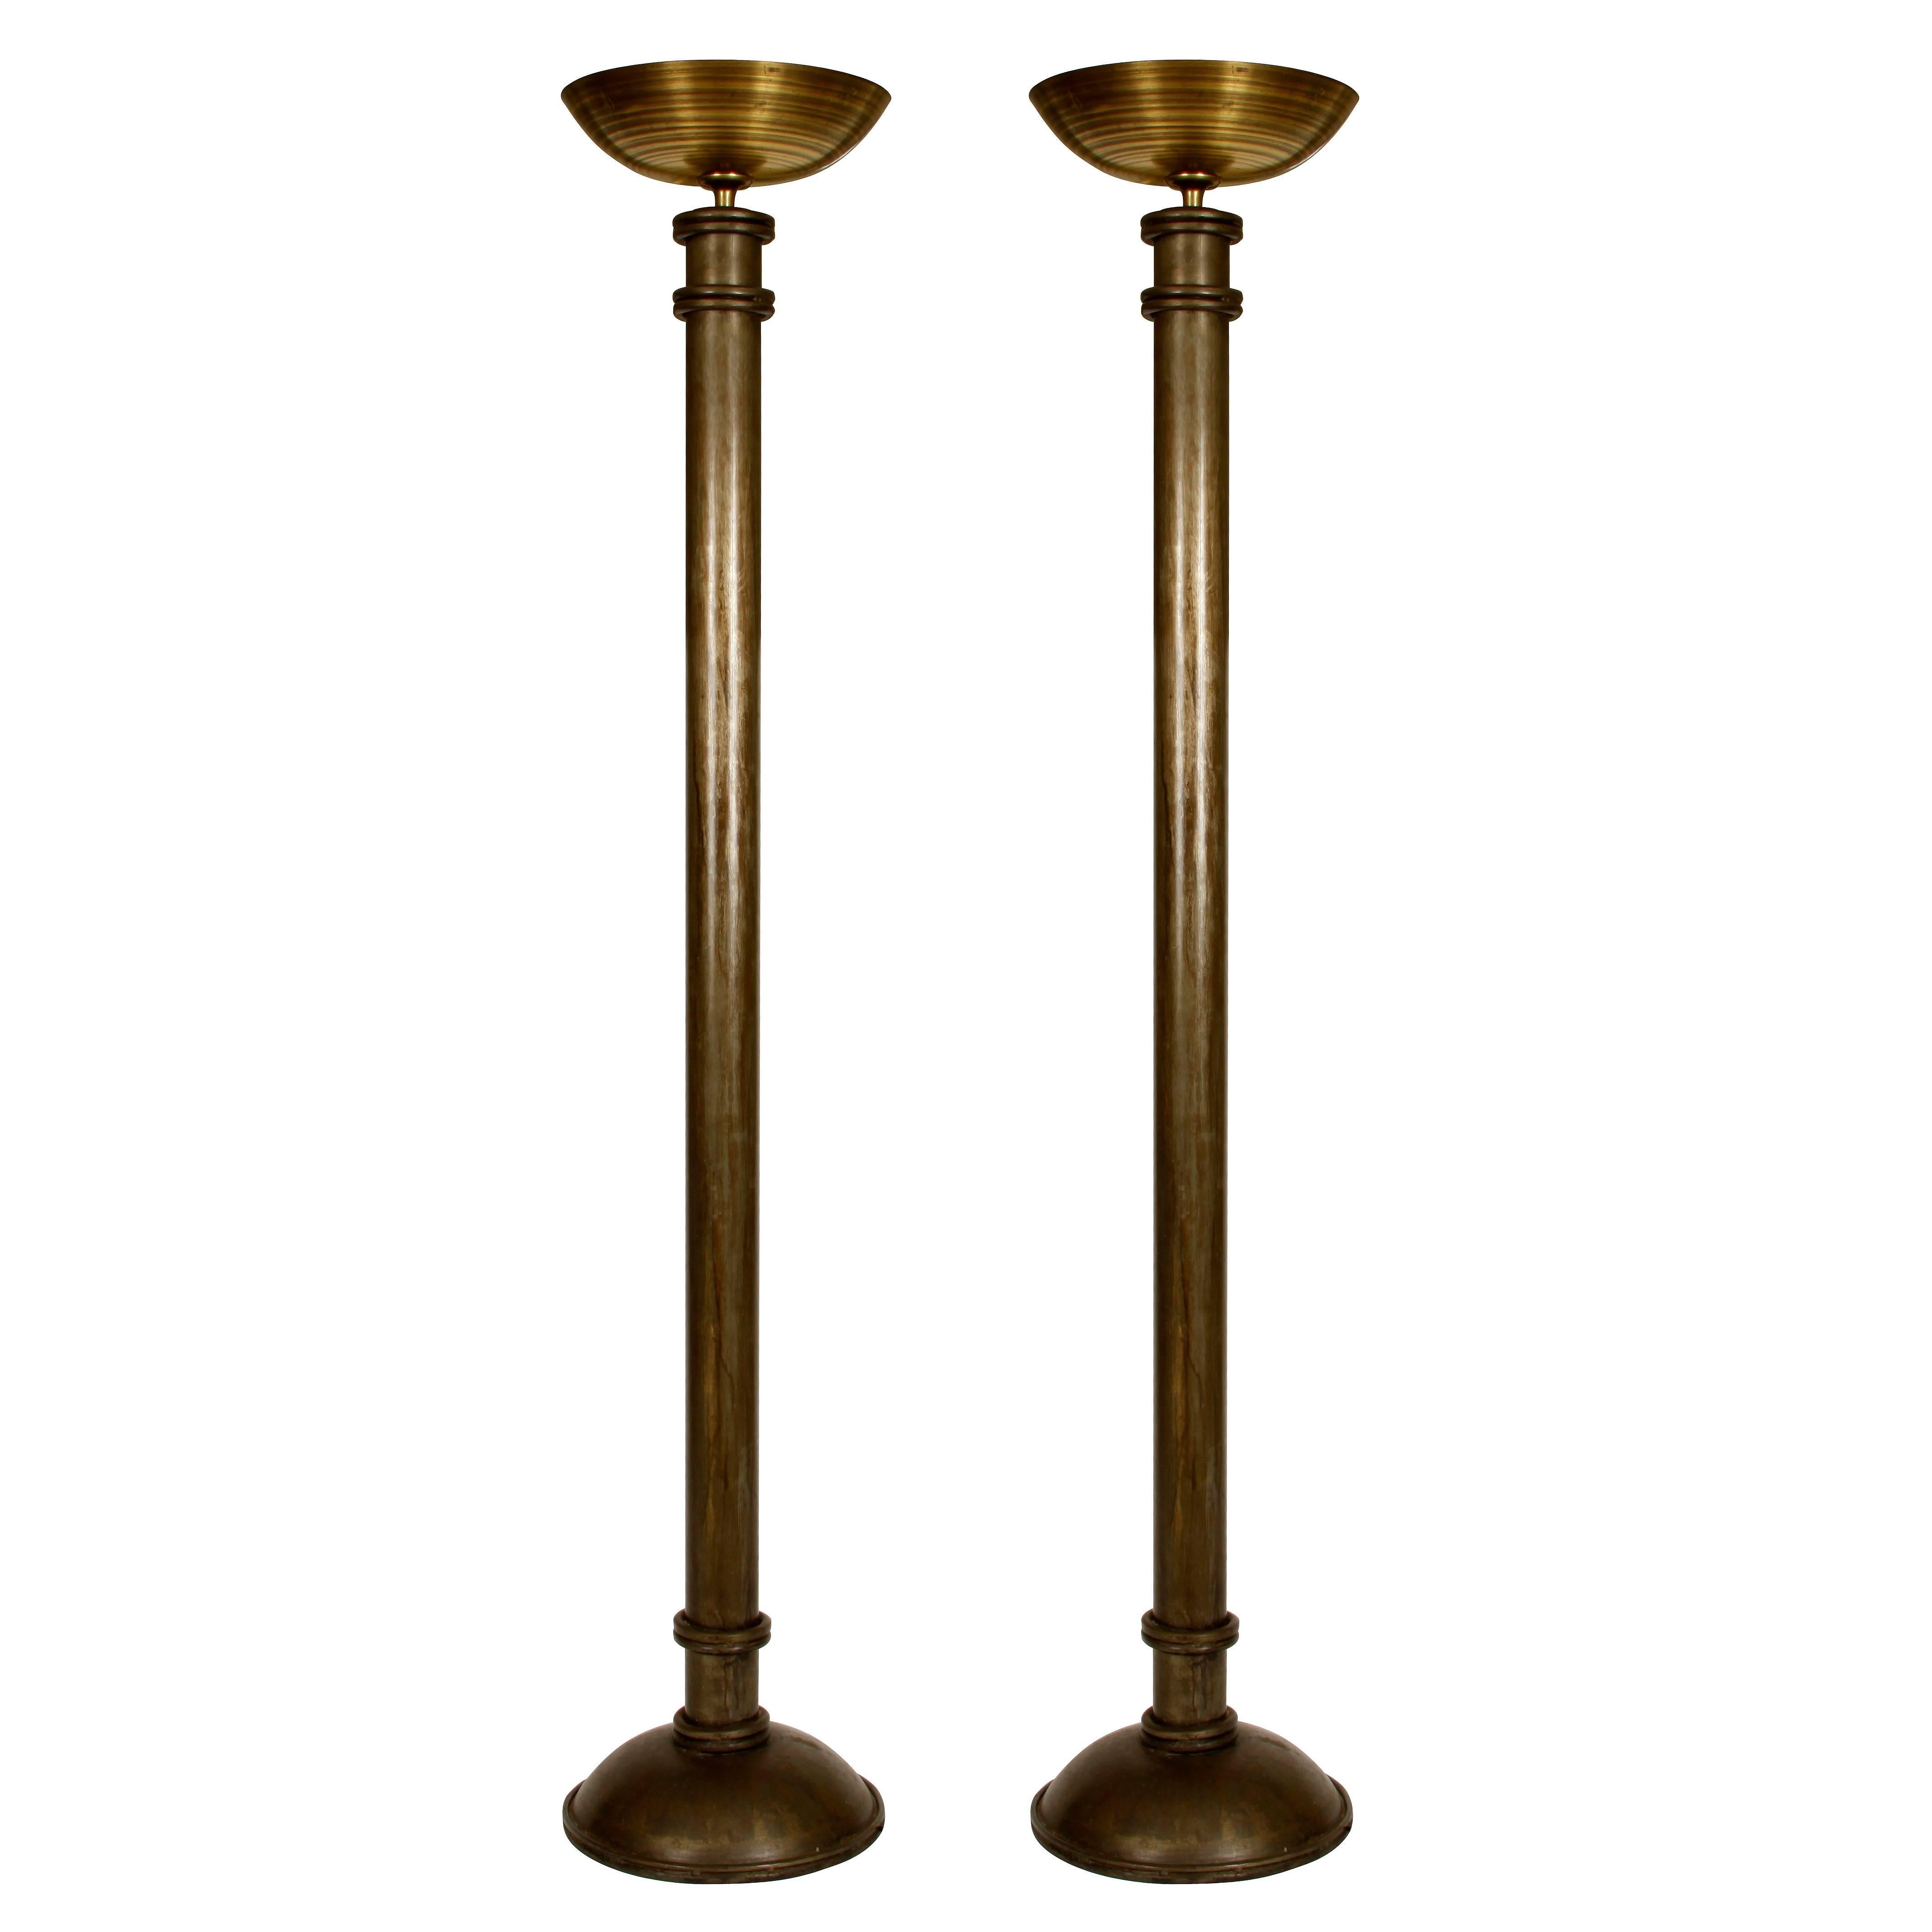 Pair of Art Deco Brass Floor Lamps